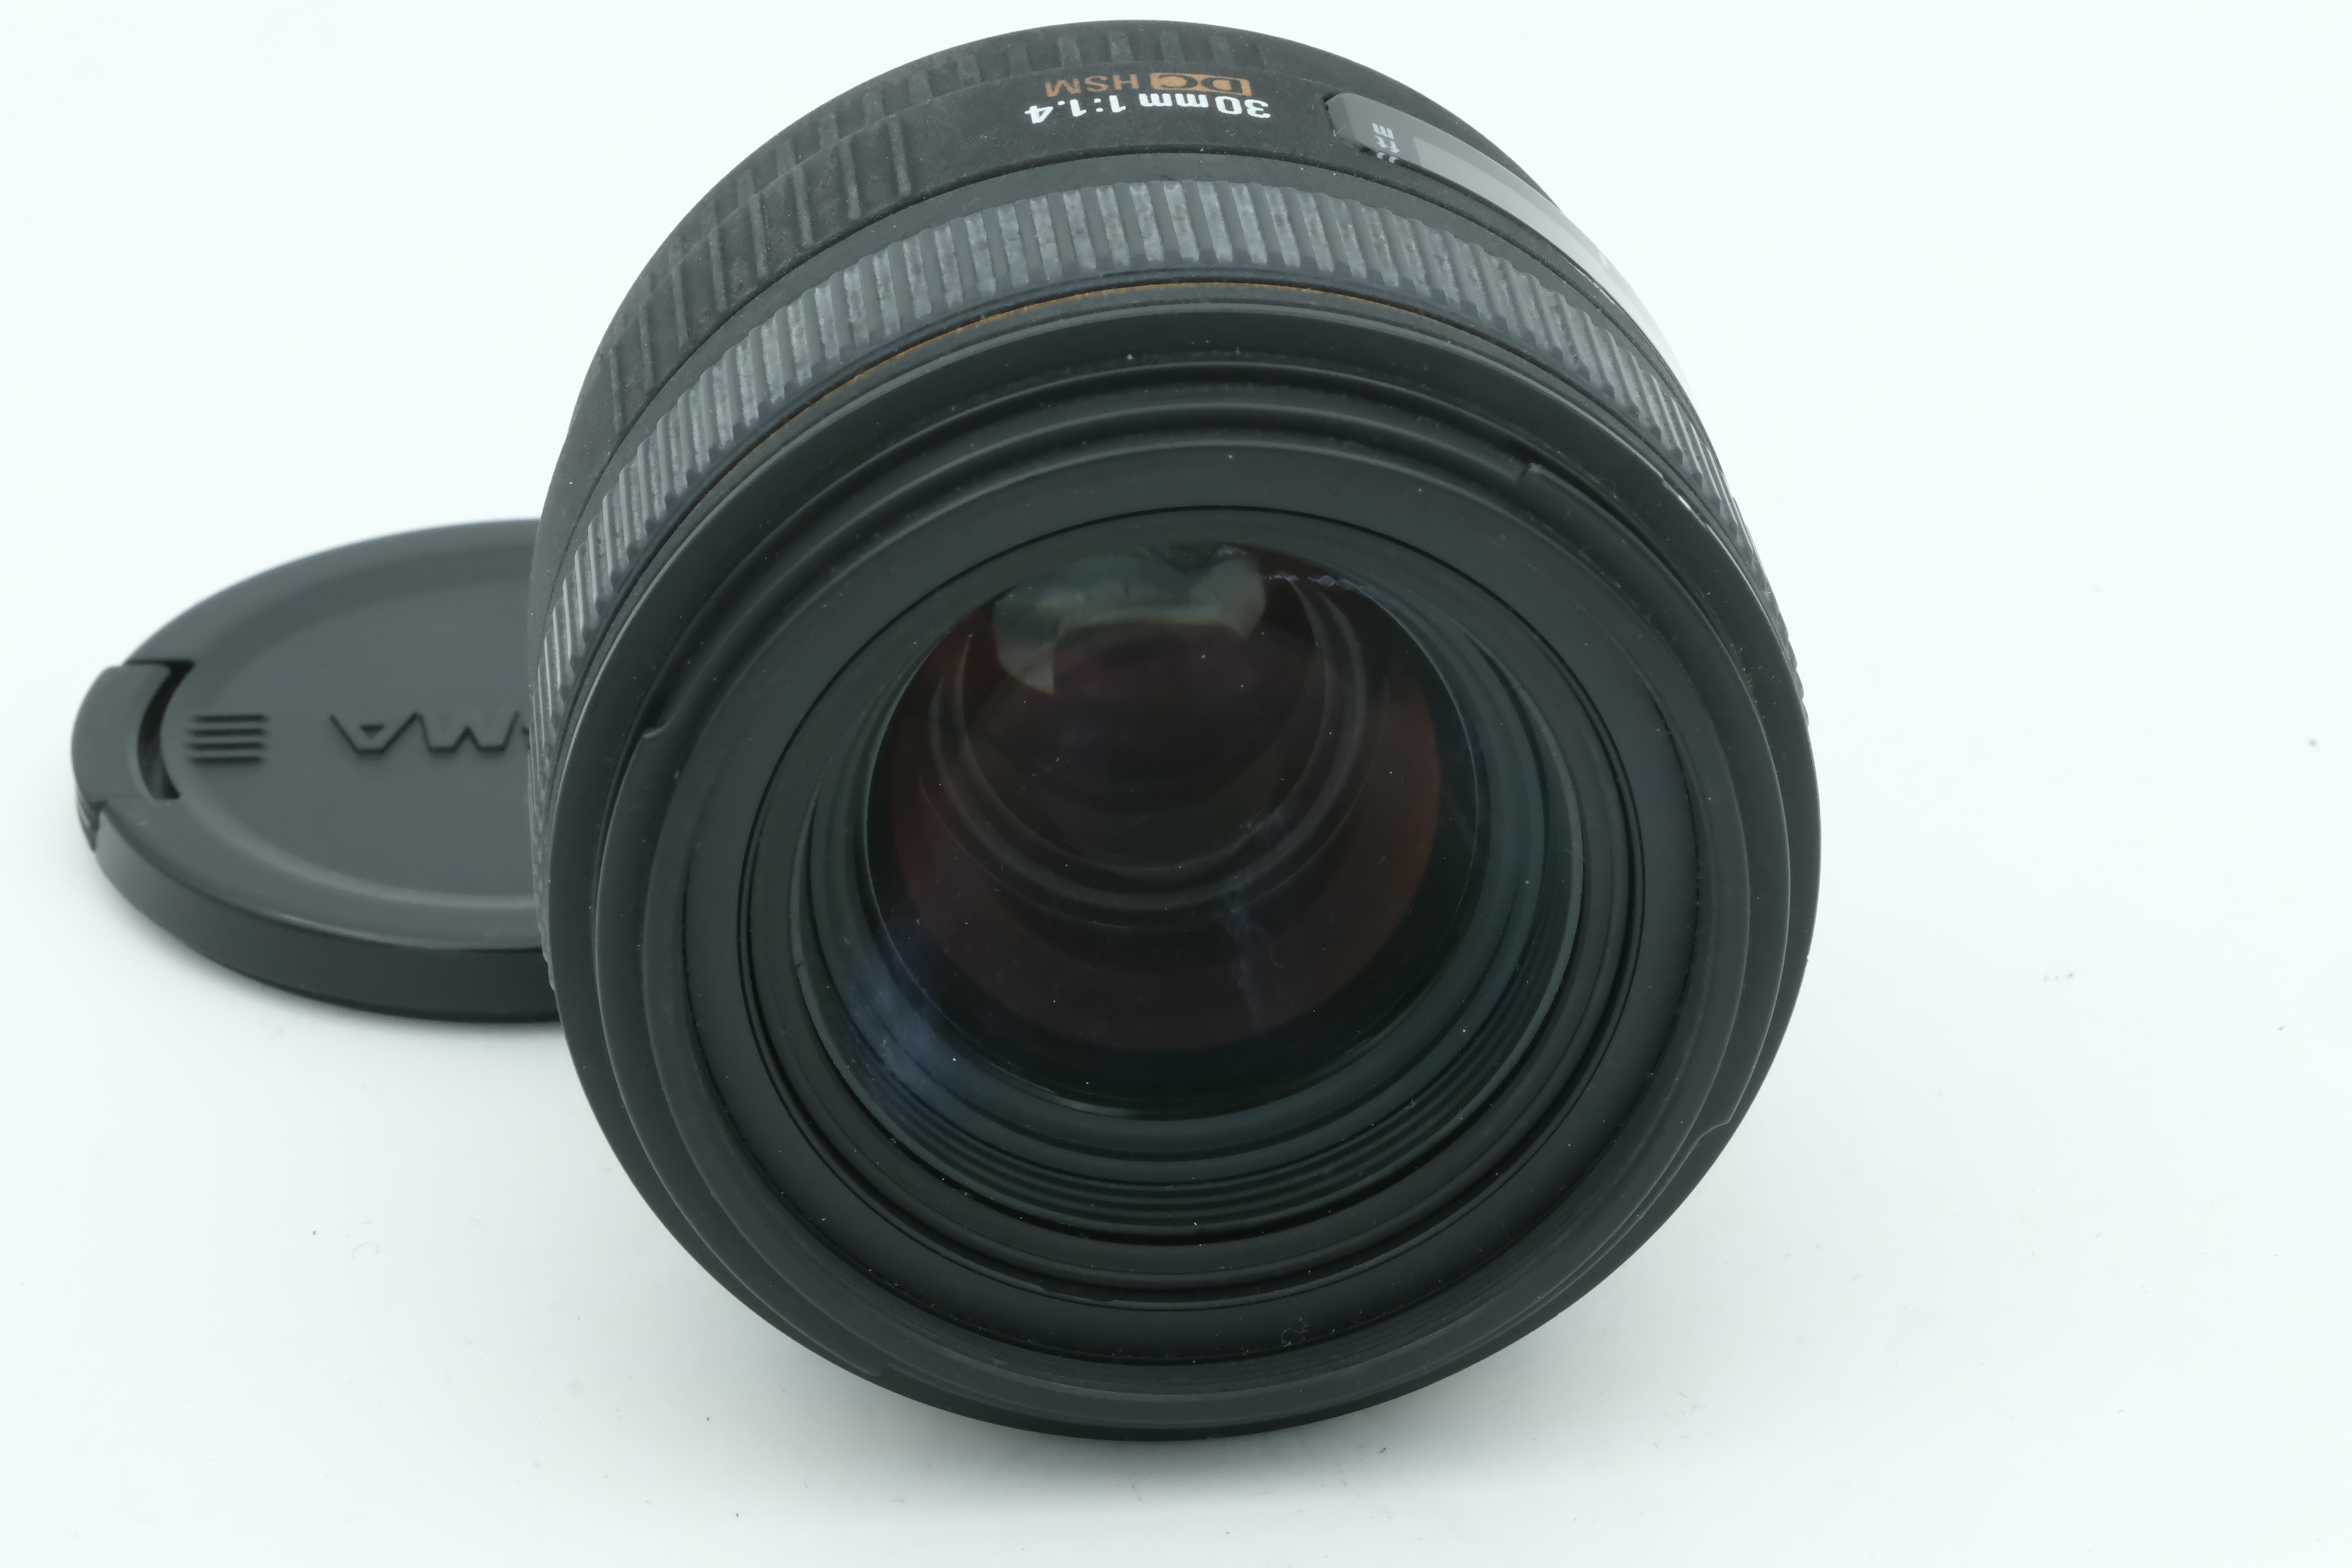 Sigma 30mm 1,4 DC HSM für Canon Bild 02